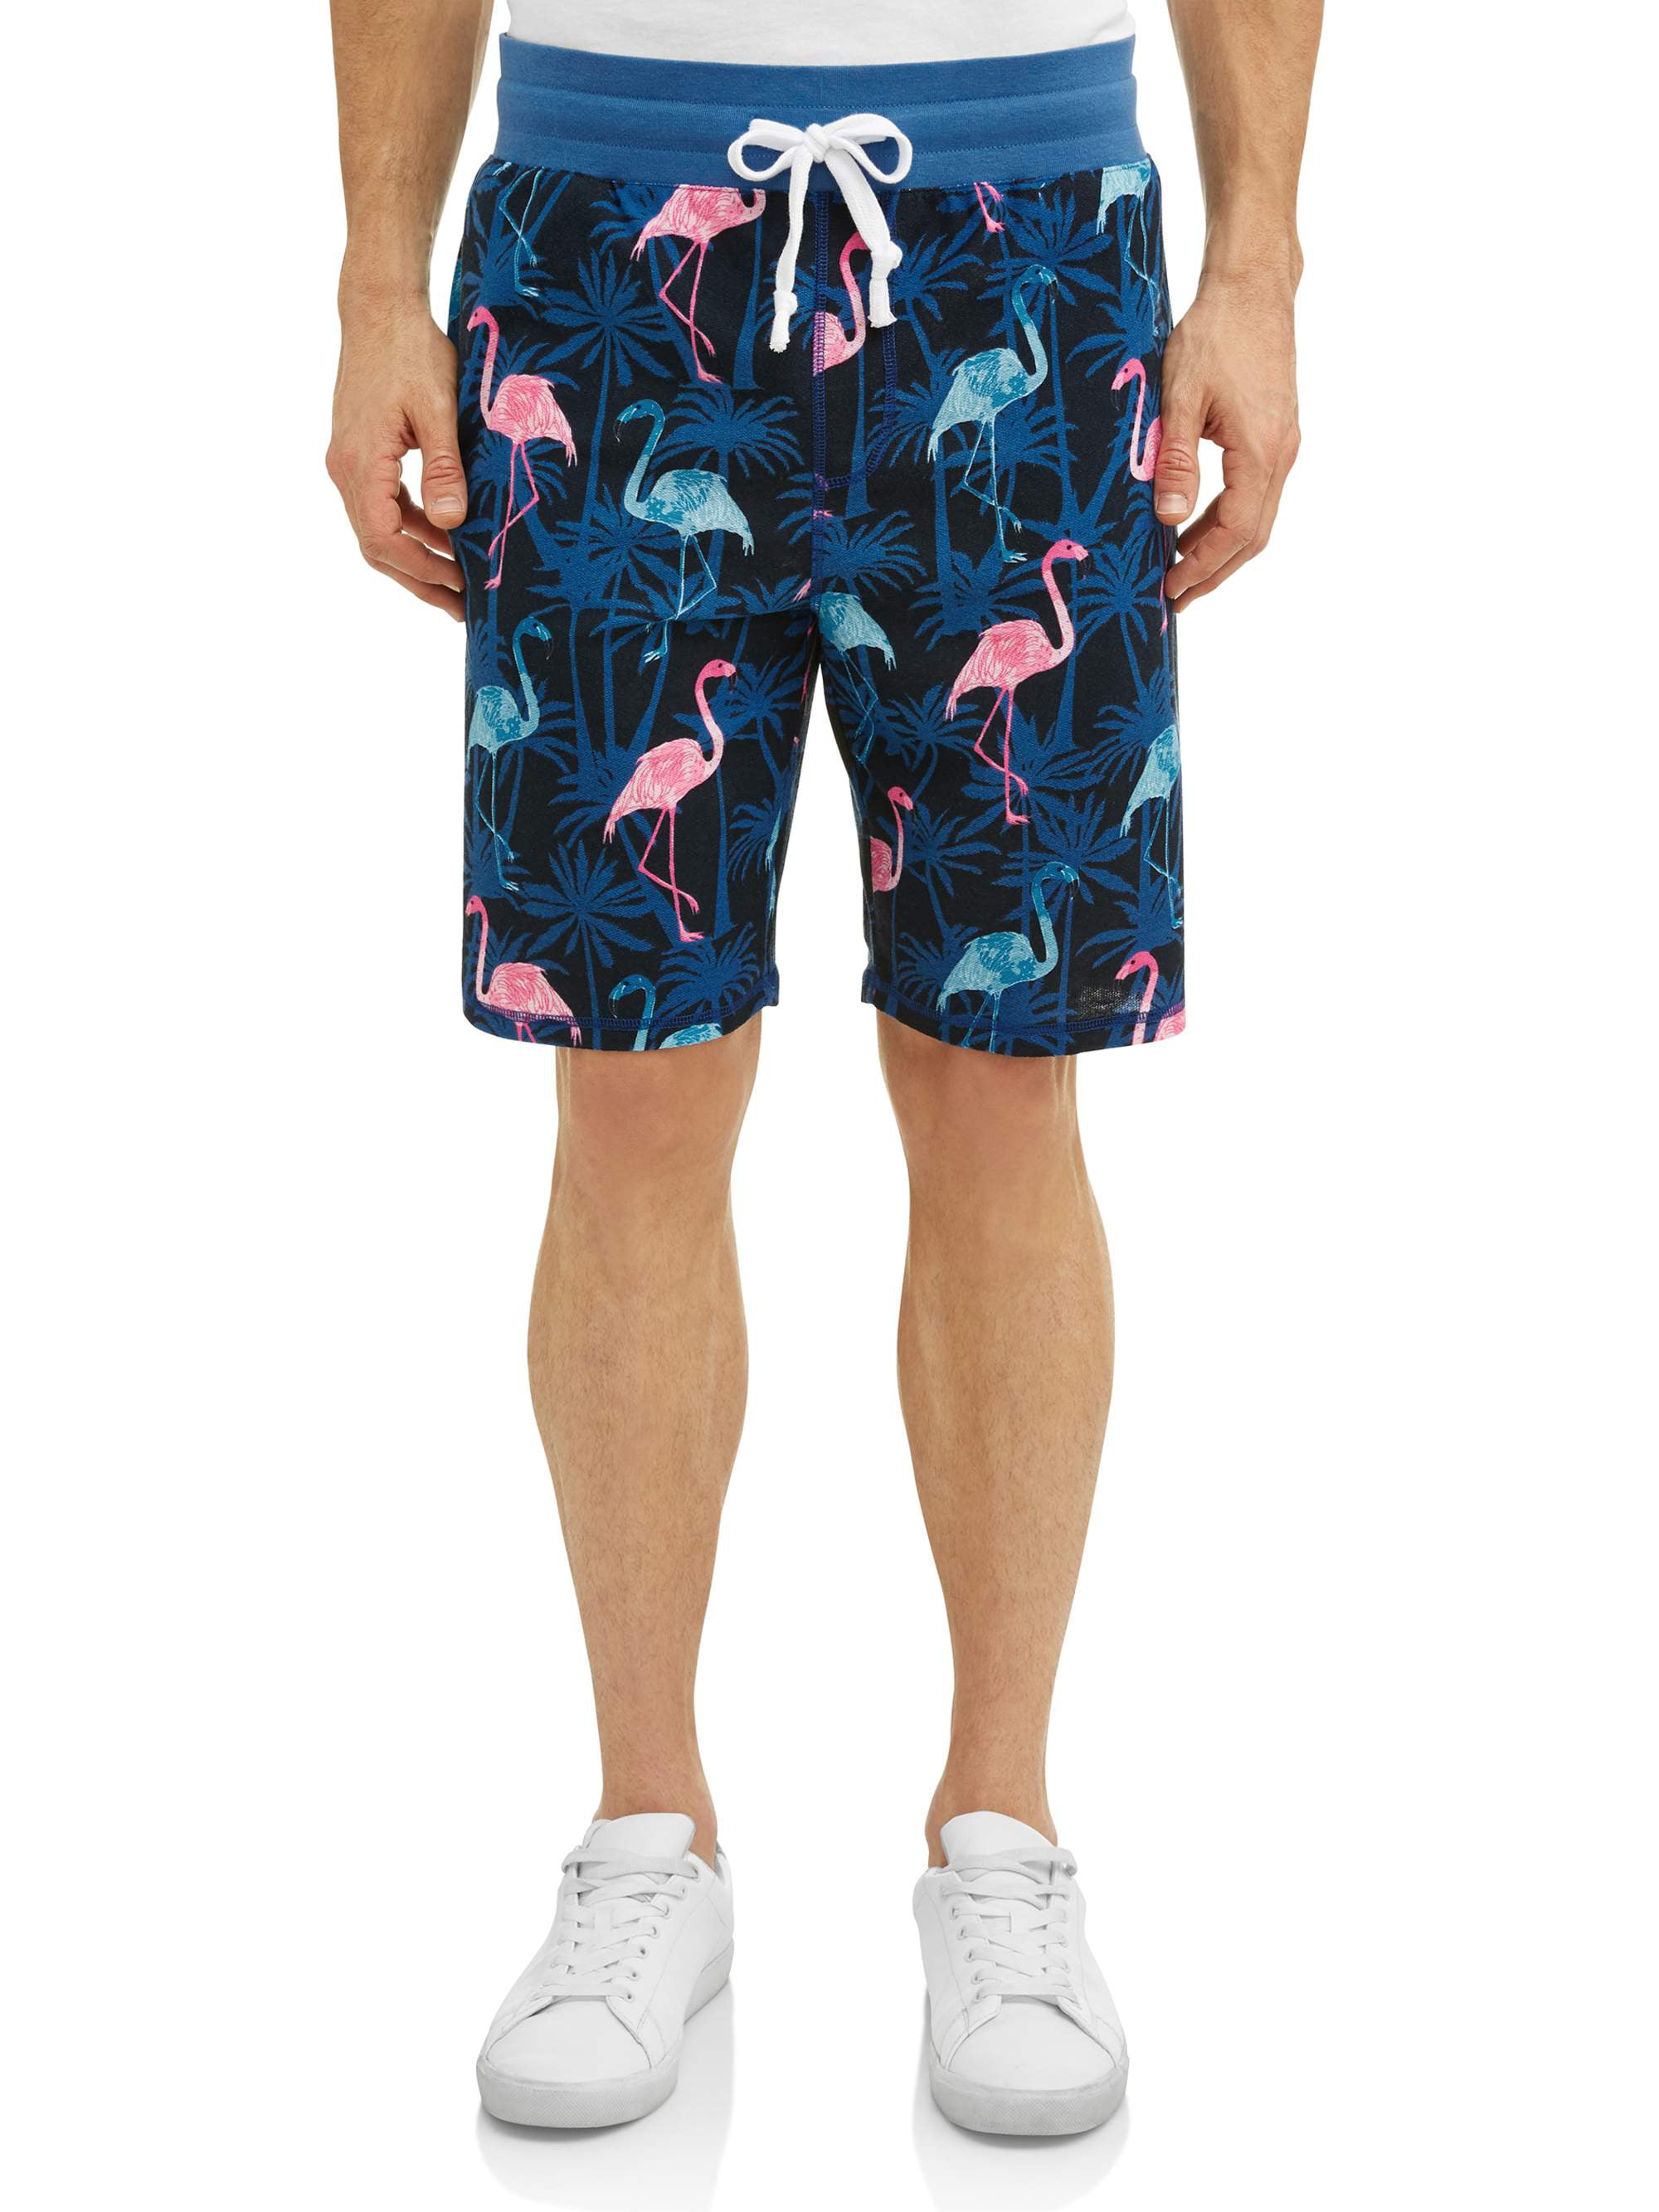 mens summer shorts